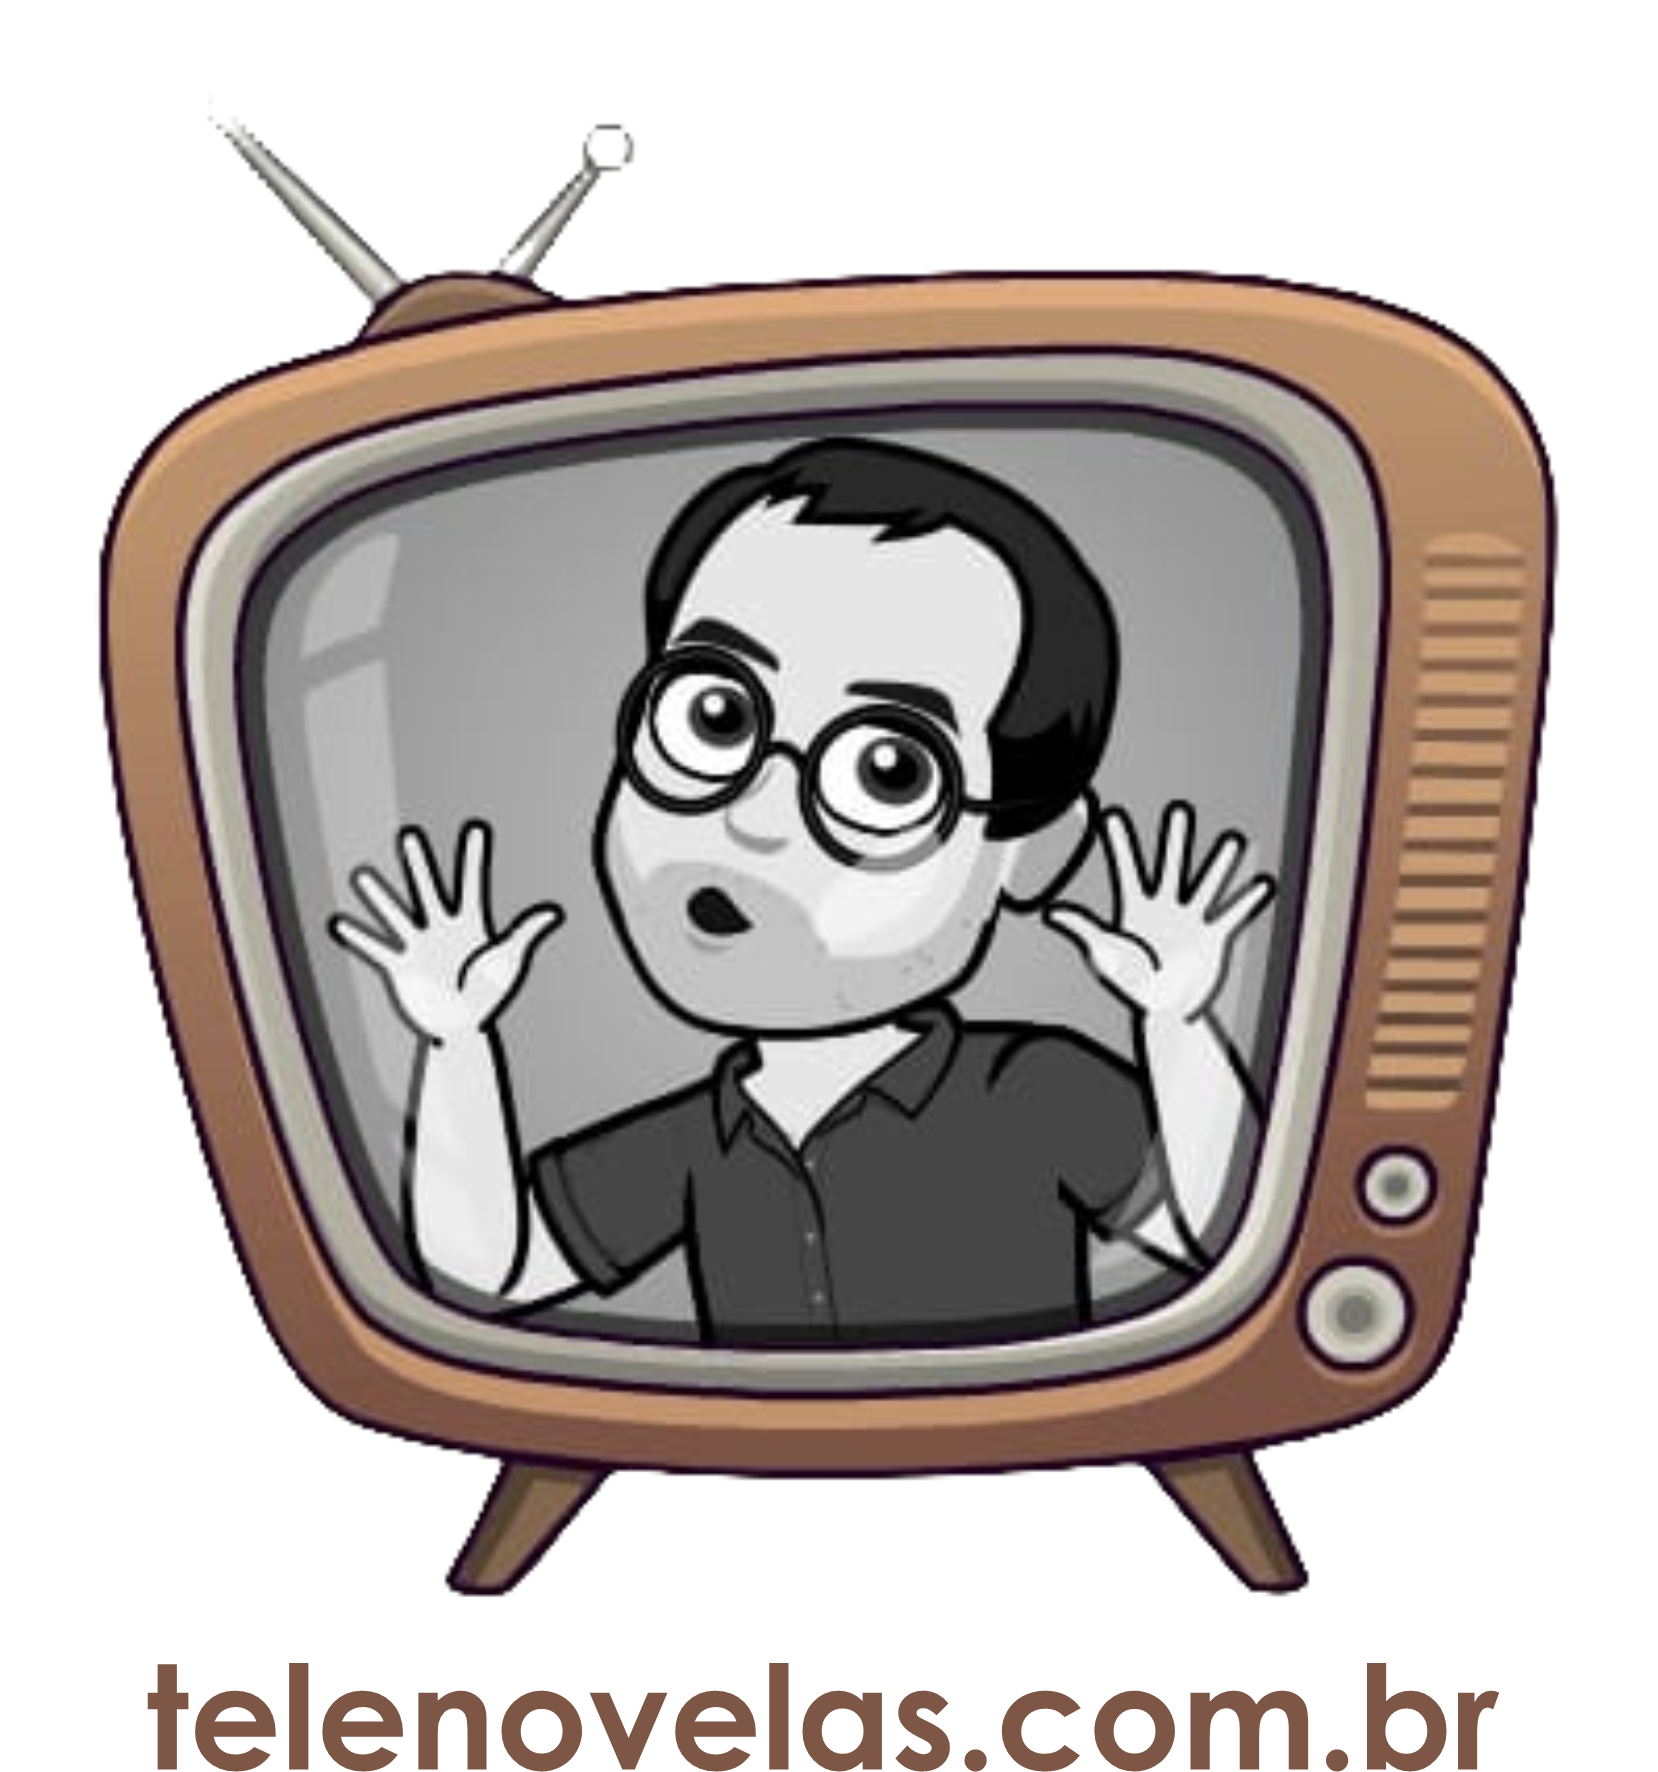 Site Telenovelas